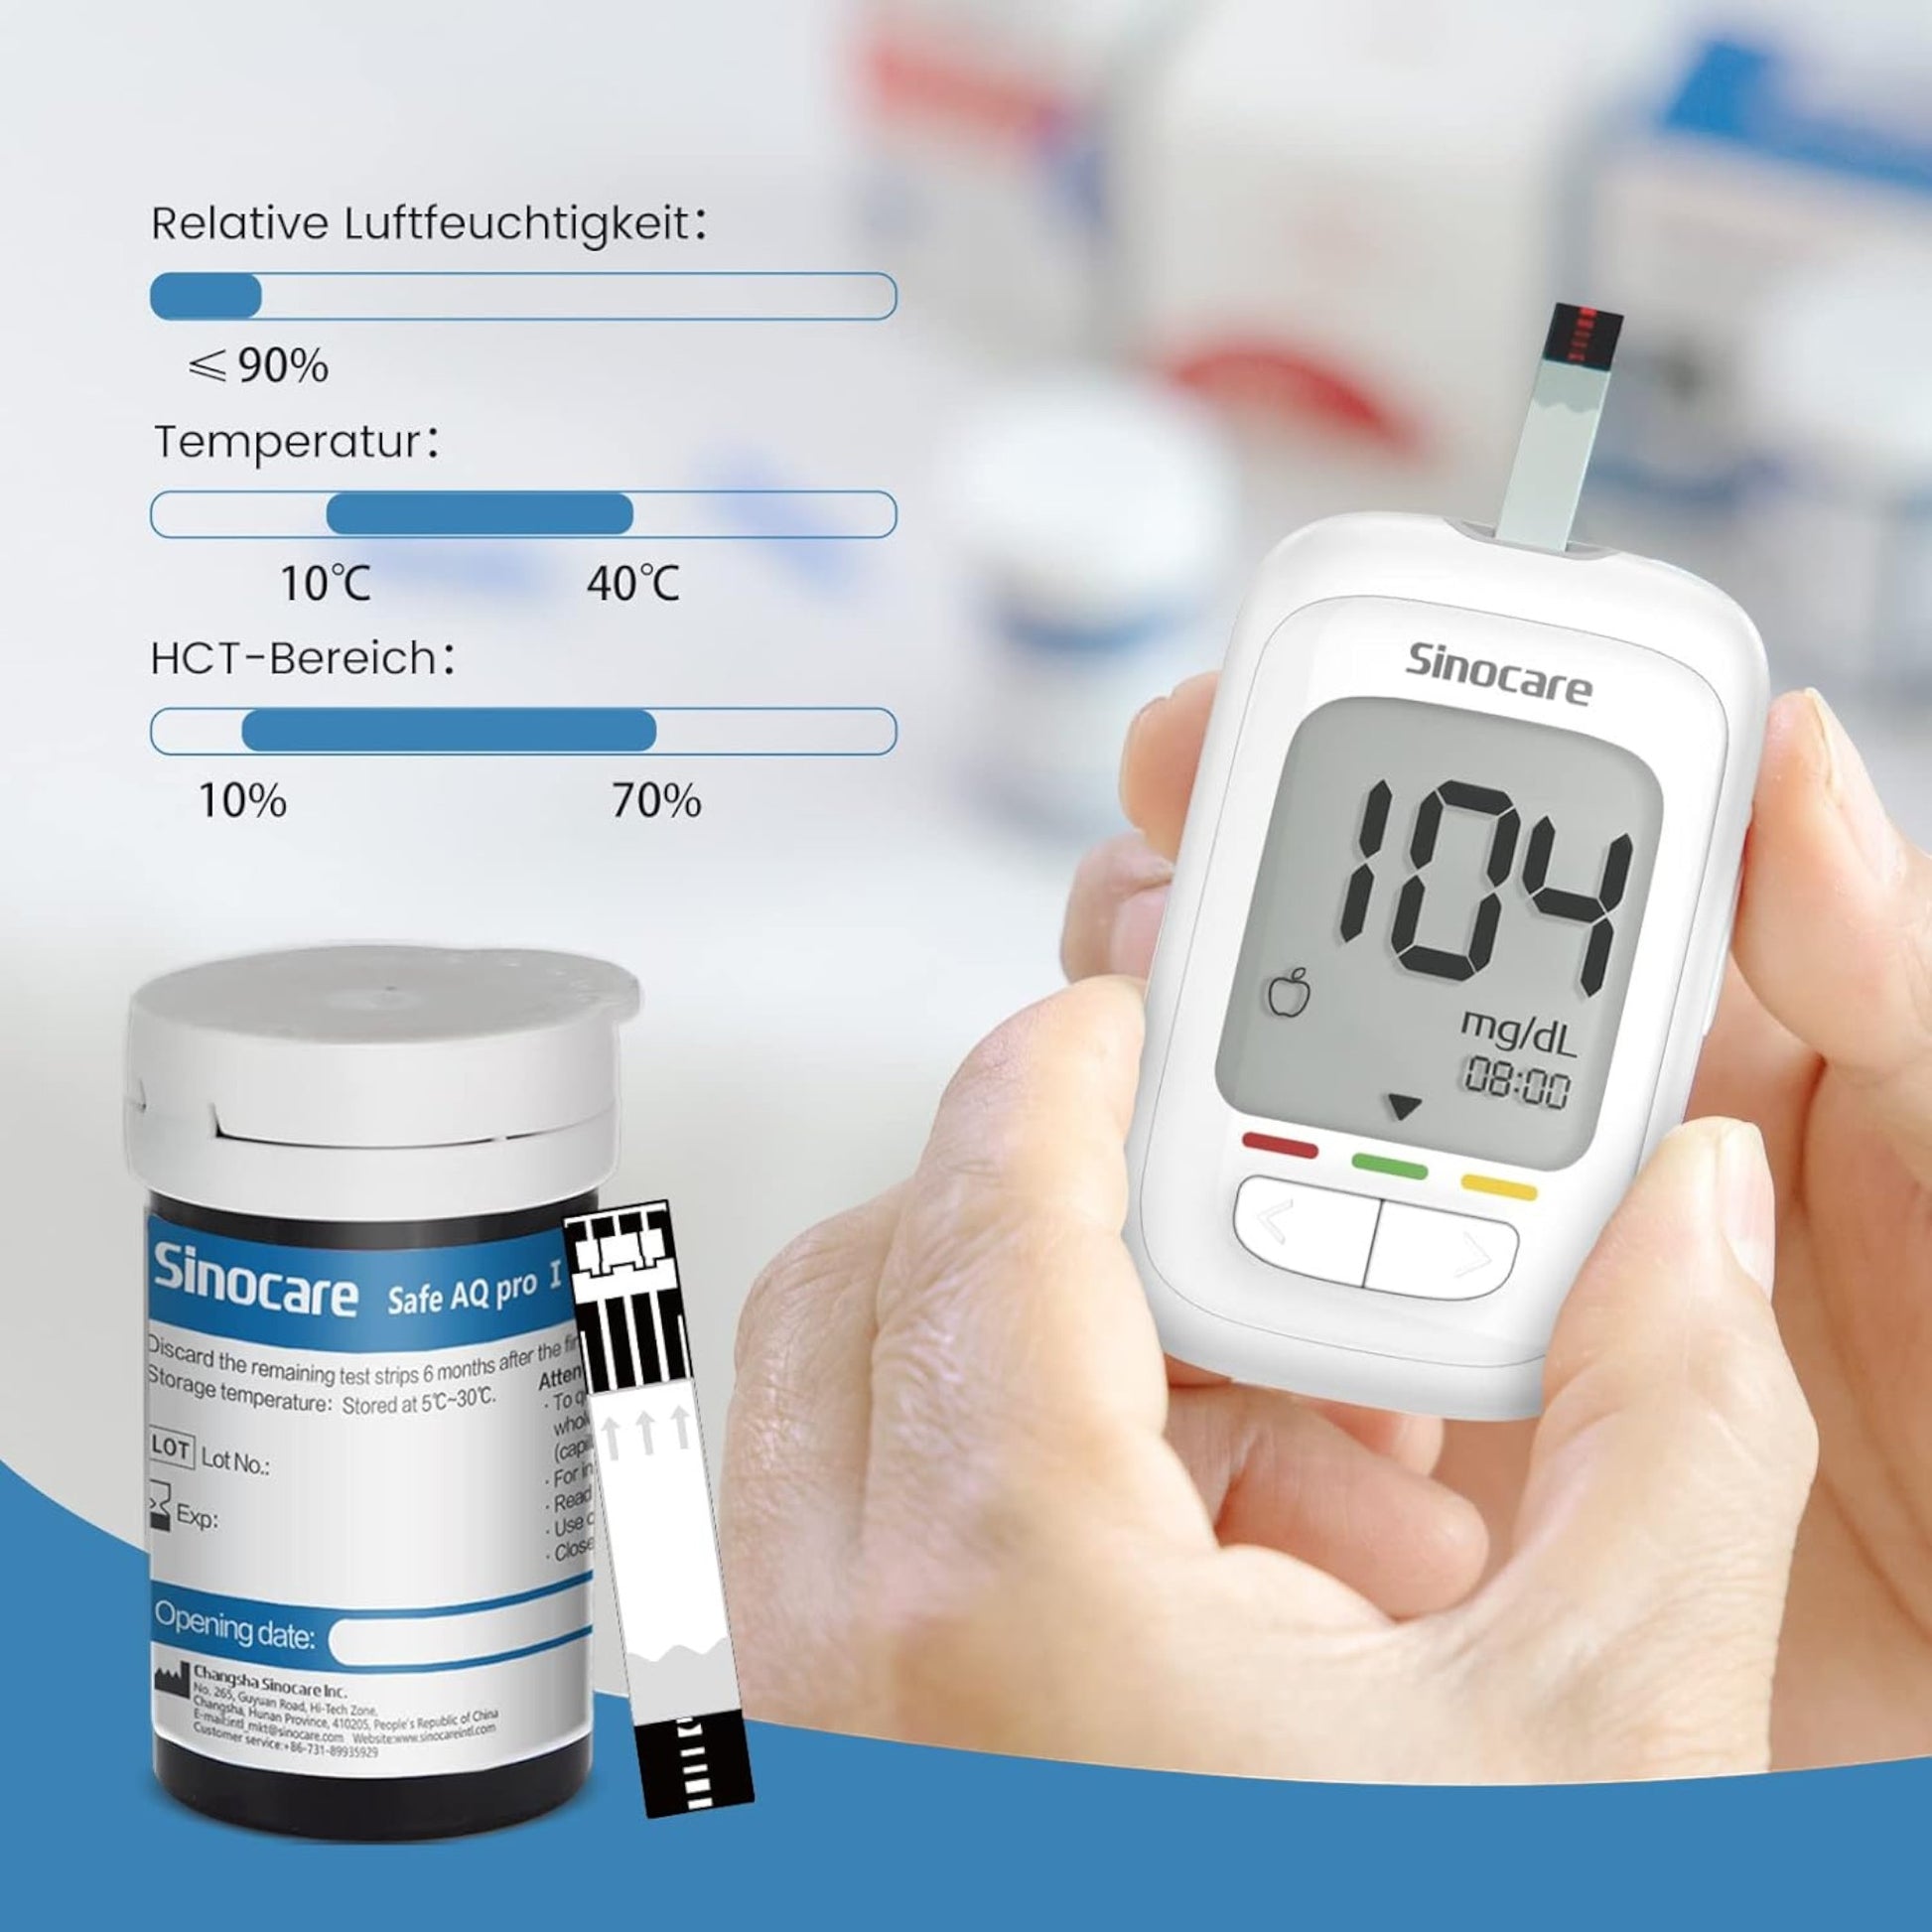 Einfache Handhabung und Anwendung der Blutzuckerteststreifen und Lanzetten für eine komfortable Nutzung des Safe AQ pro I Messgeräts.